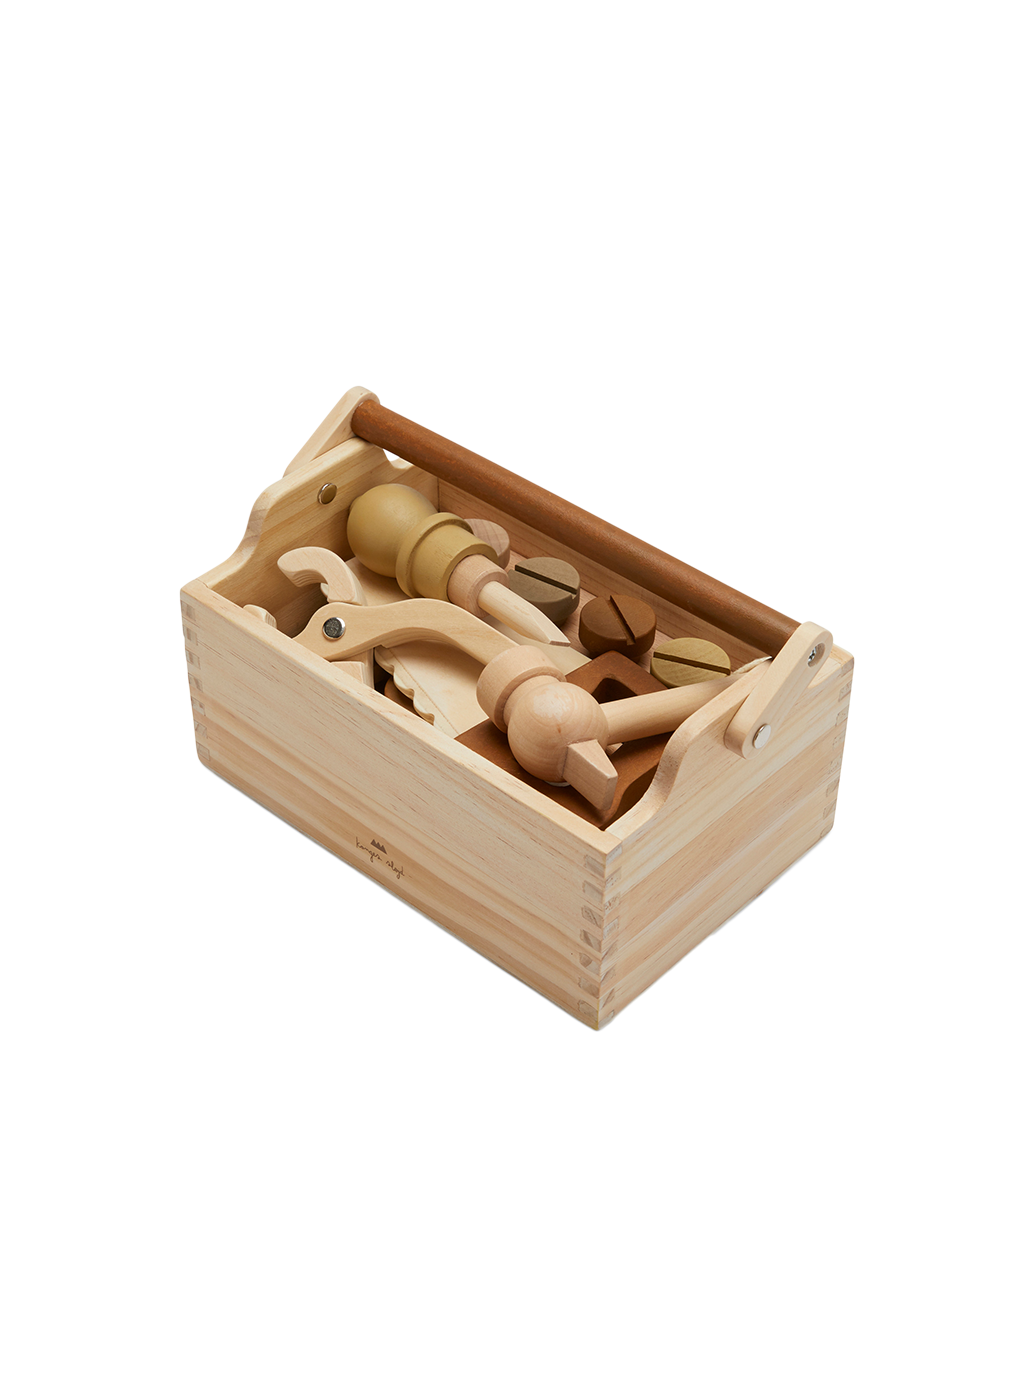 Outils en bois dans une valise